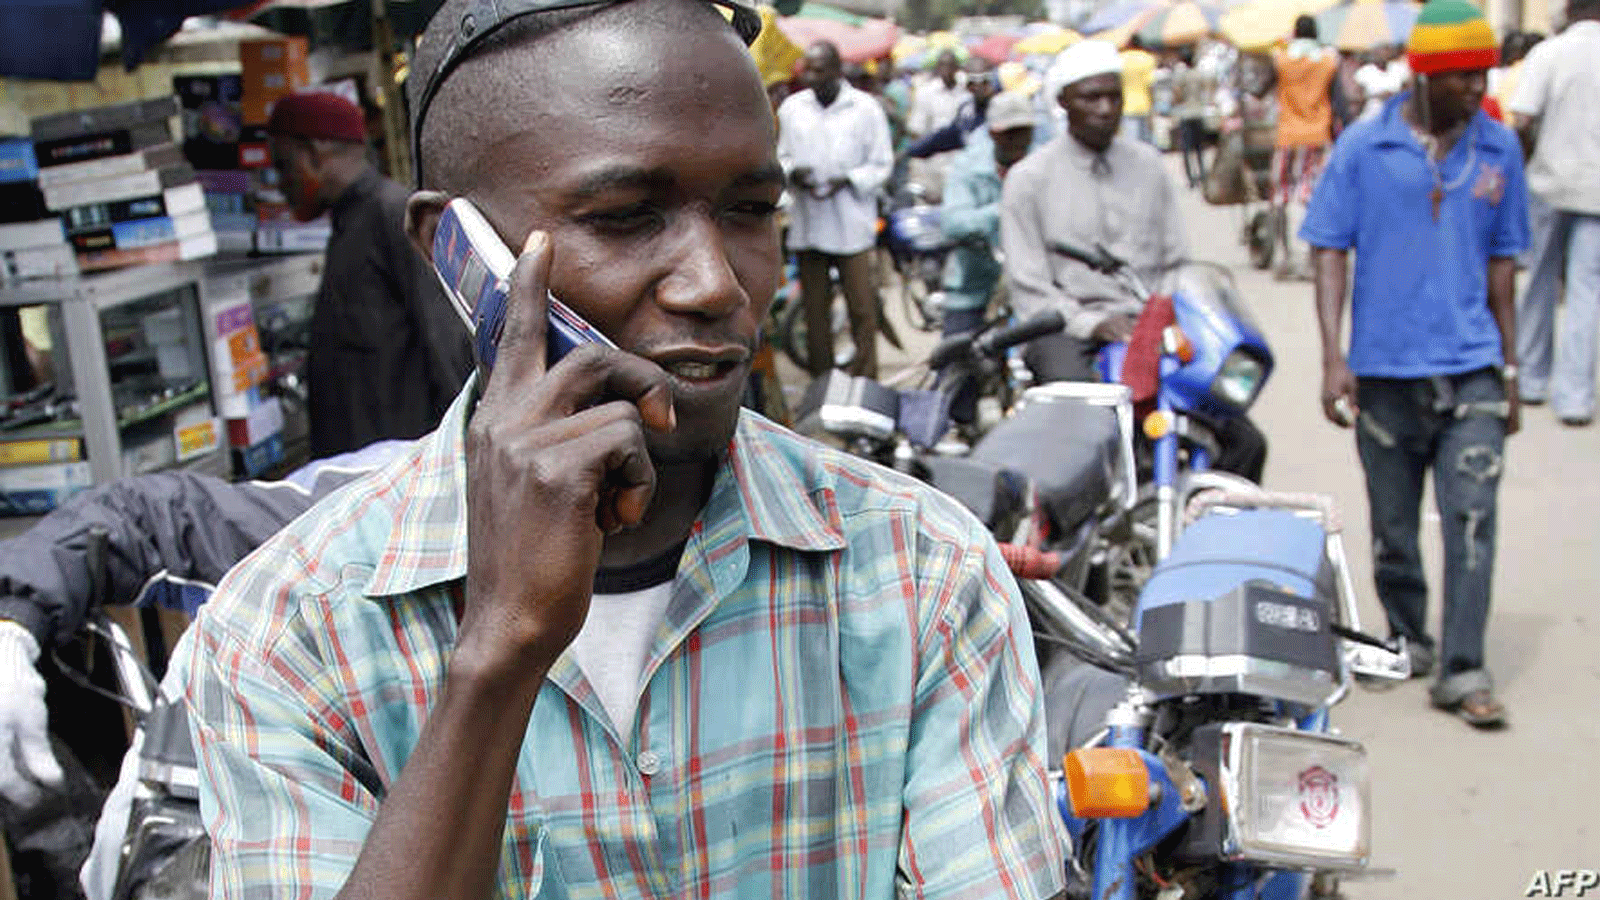 سائق دراجة نارية يتحدث على الهاتف المحمول في منطقة أوباليندي في لاغوس.18 آب/ أغسطس 2008 